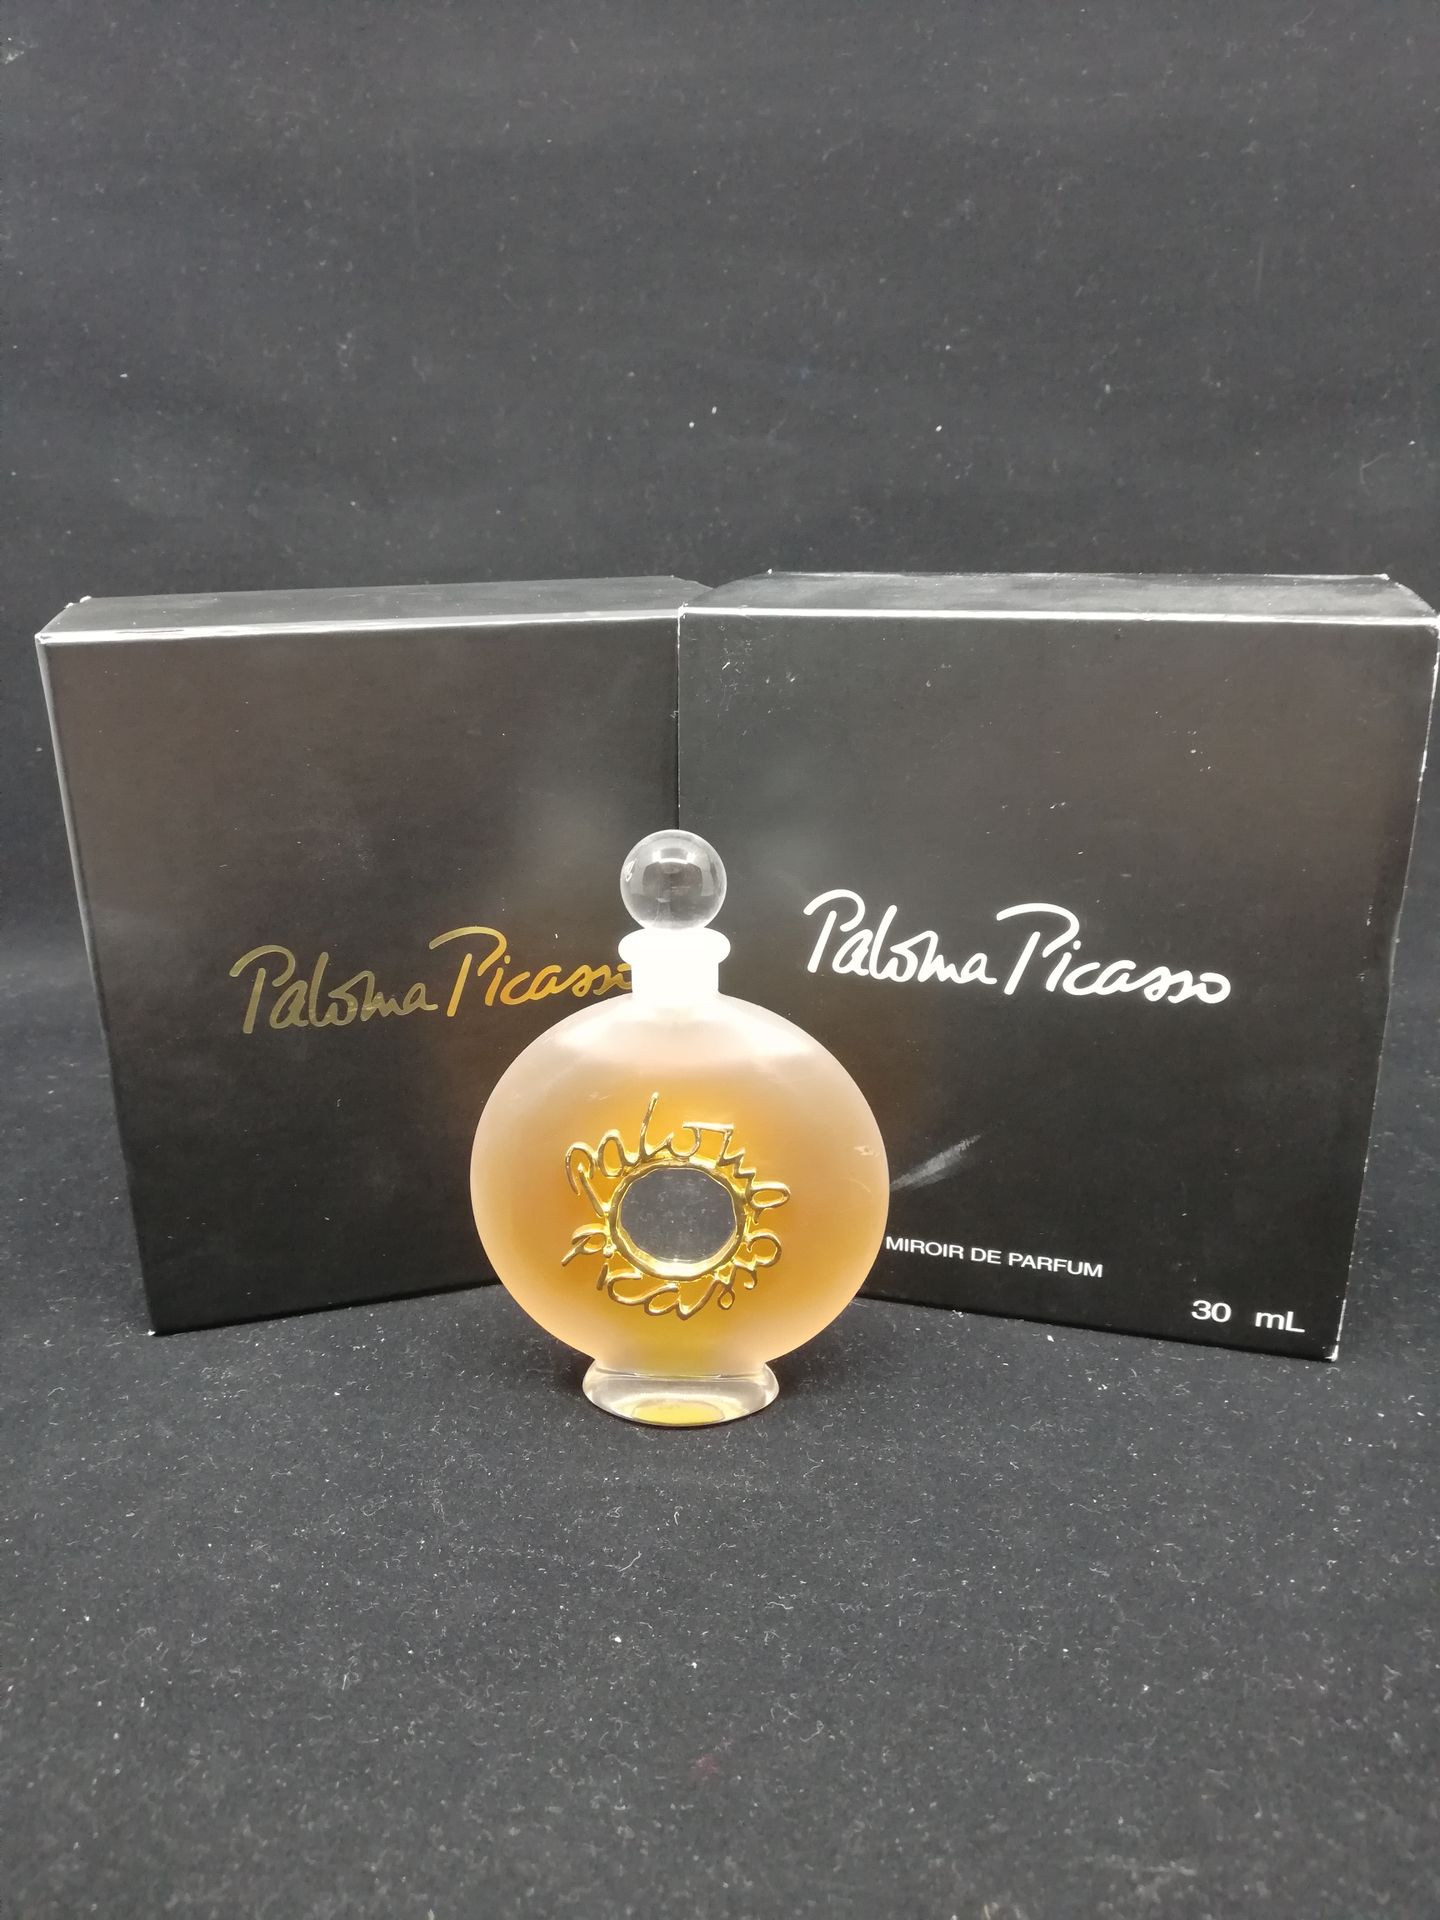 Null Paloma Picasso - (1990er Jahre)

Flakon der Edition "Miroir de Parfum", num&hellip;